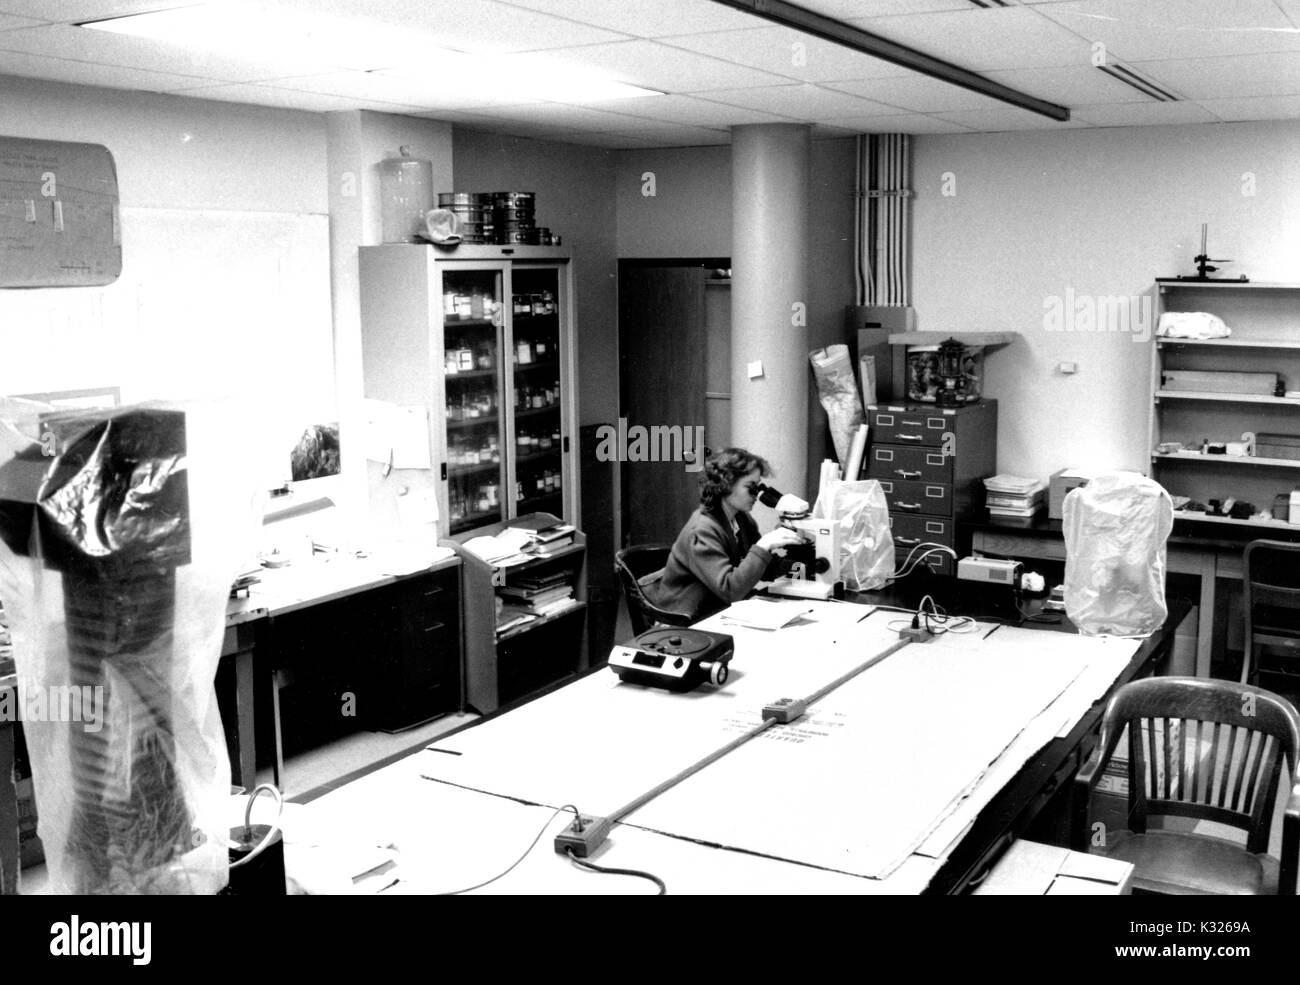 Innerhalb der Sedimentologie Labor von Lawrence A. Hardie in Olin Halle - die Masse und planetarische Wissenschaften Gebäude an der Johns Hopkins University -- eine Wissenschaftlerin sitzt alleine am Rand von einem langen Tisch Peering durch ein Mikroskop im Labor Ausrüstung und Materialien, Baltimore, Maryland, 1986 umgeben. Stockfoto